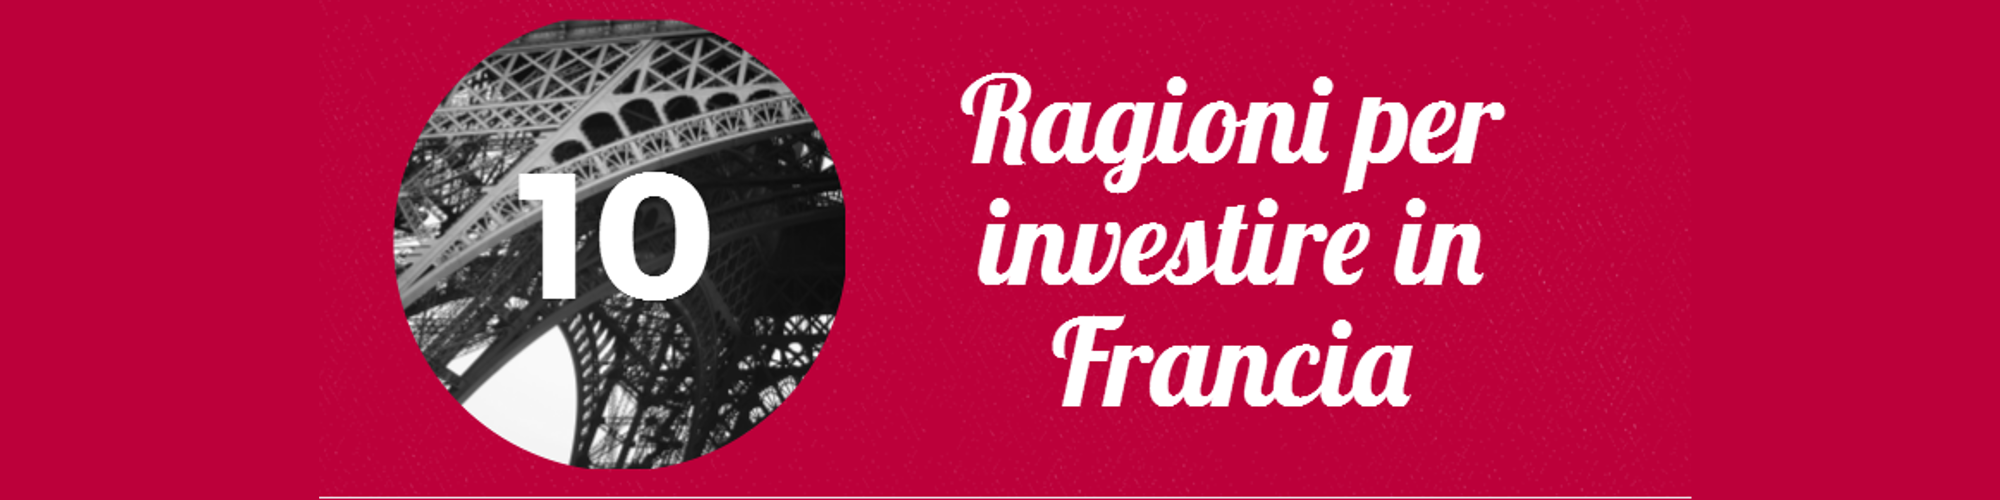 10 ragioni per investire en Francia